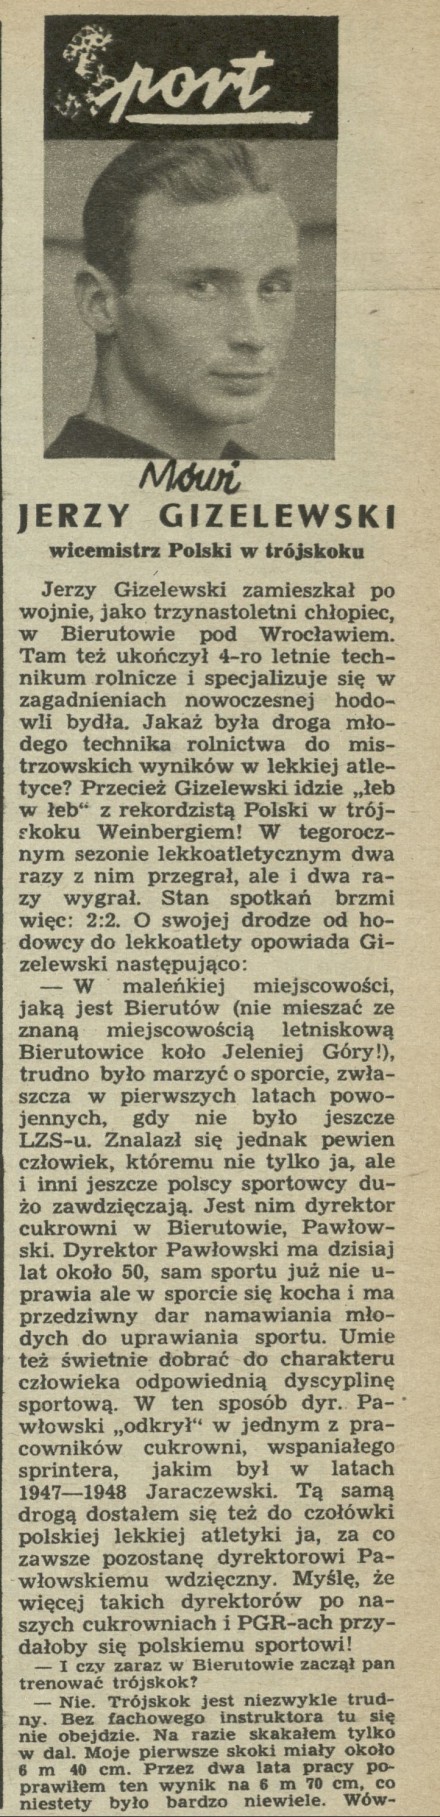 Mówi Jerzy Gizelewski - wicemistrz Polski w trójskoku